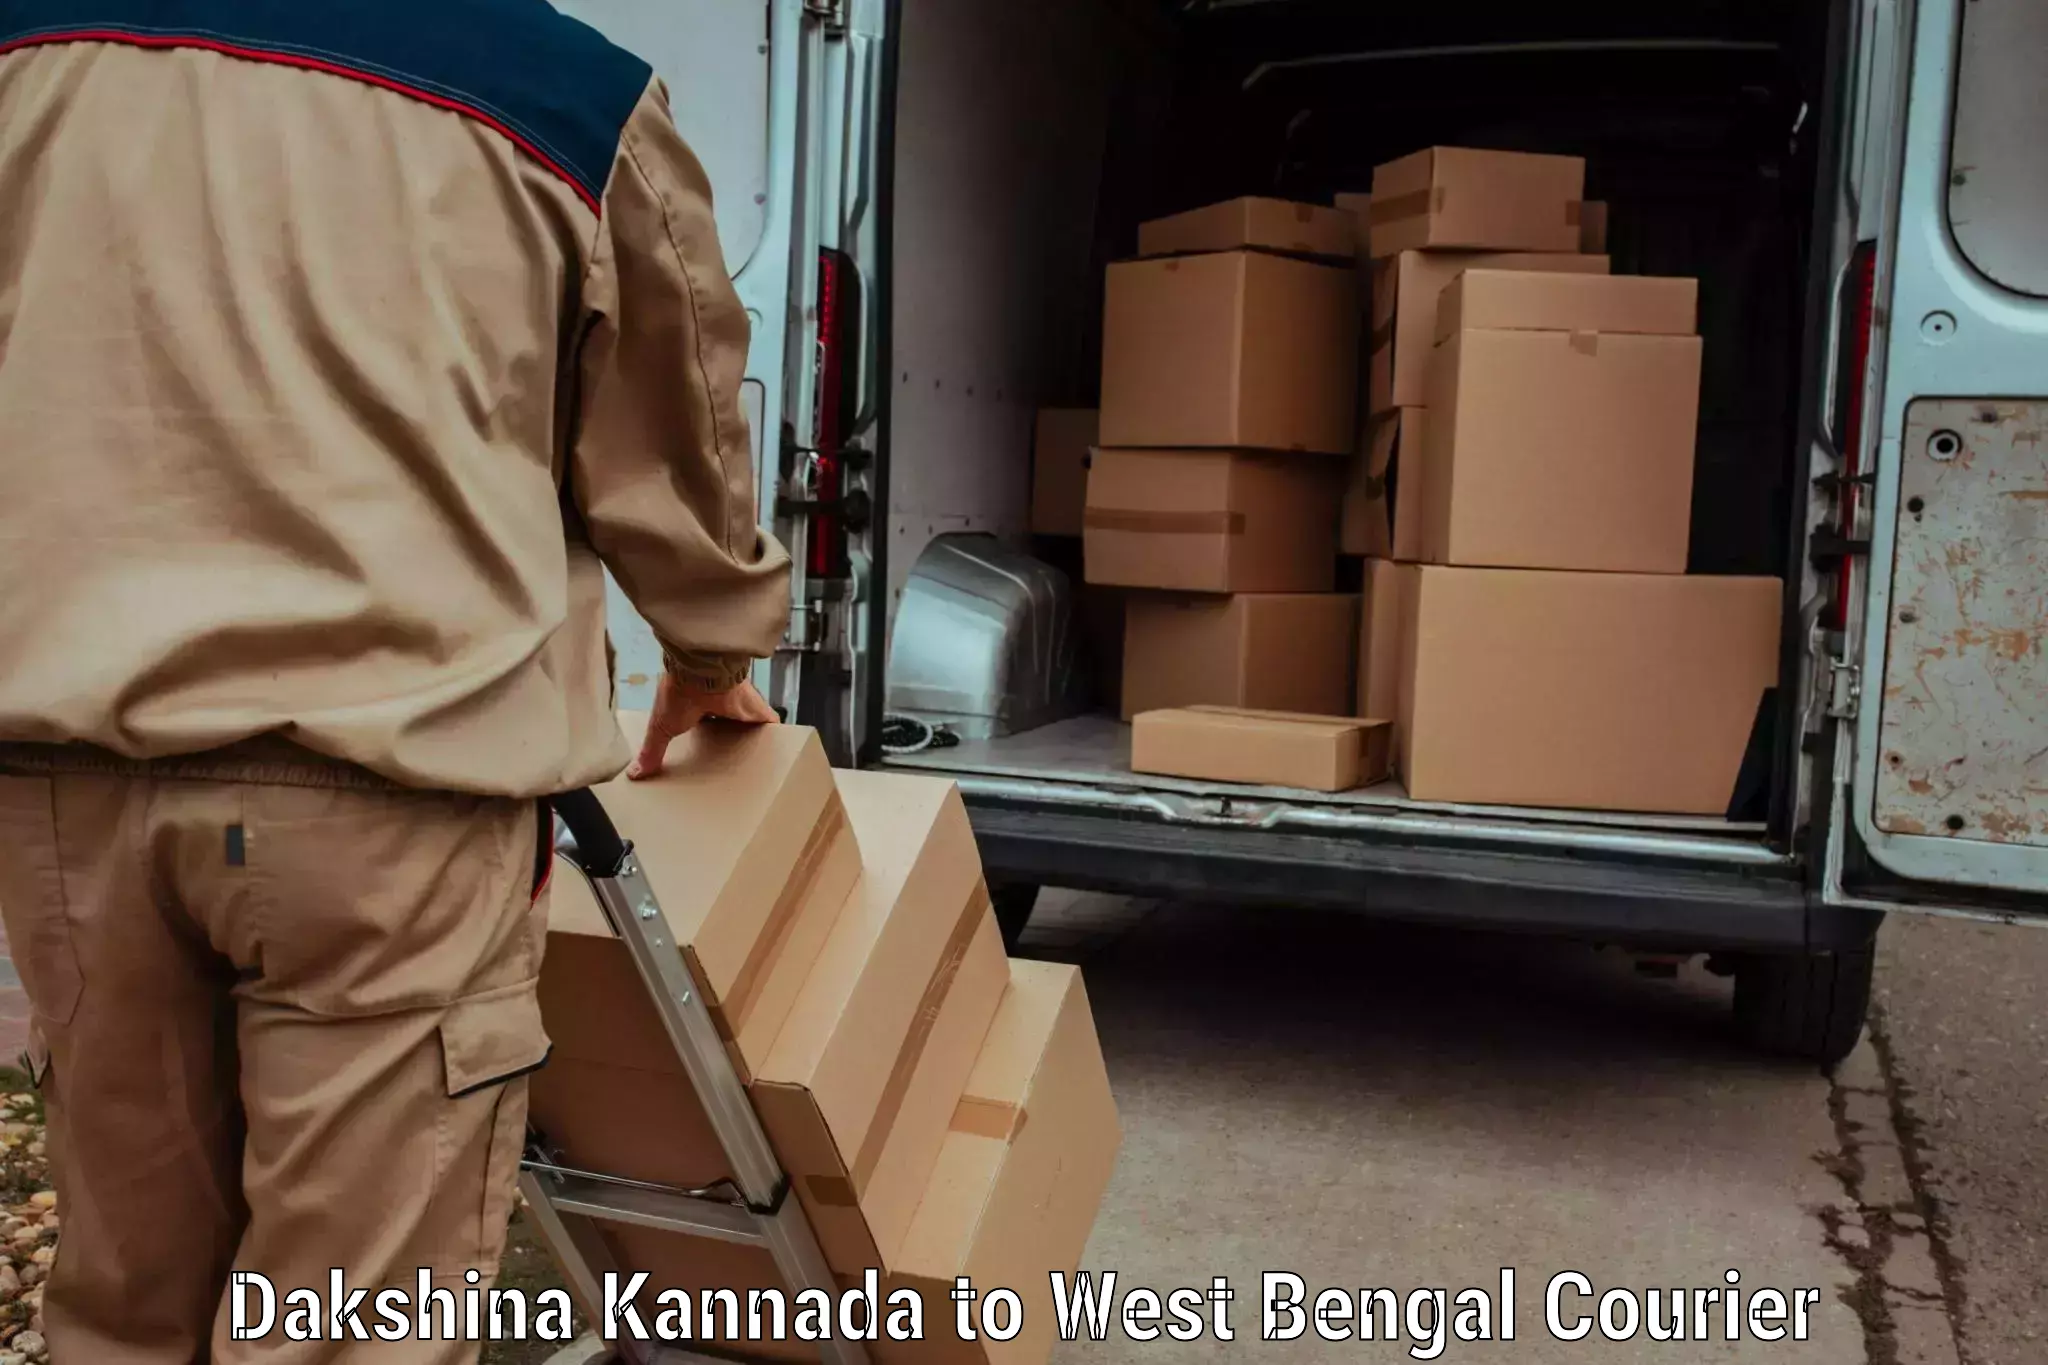 Luggage shipping service Dakshina Kannada to West Bengal